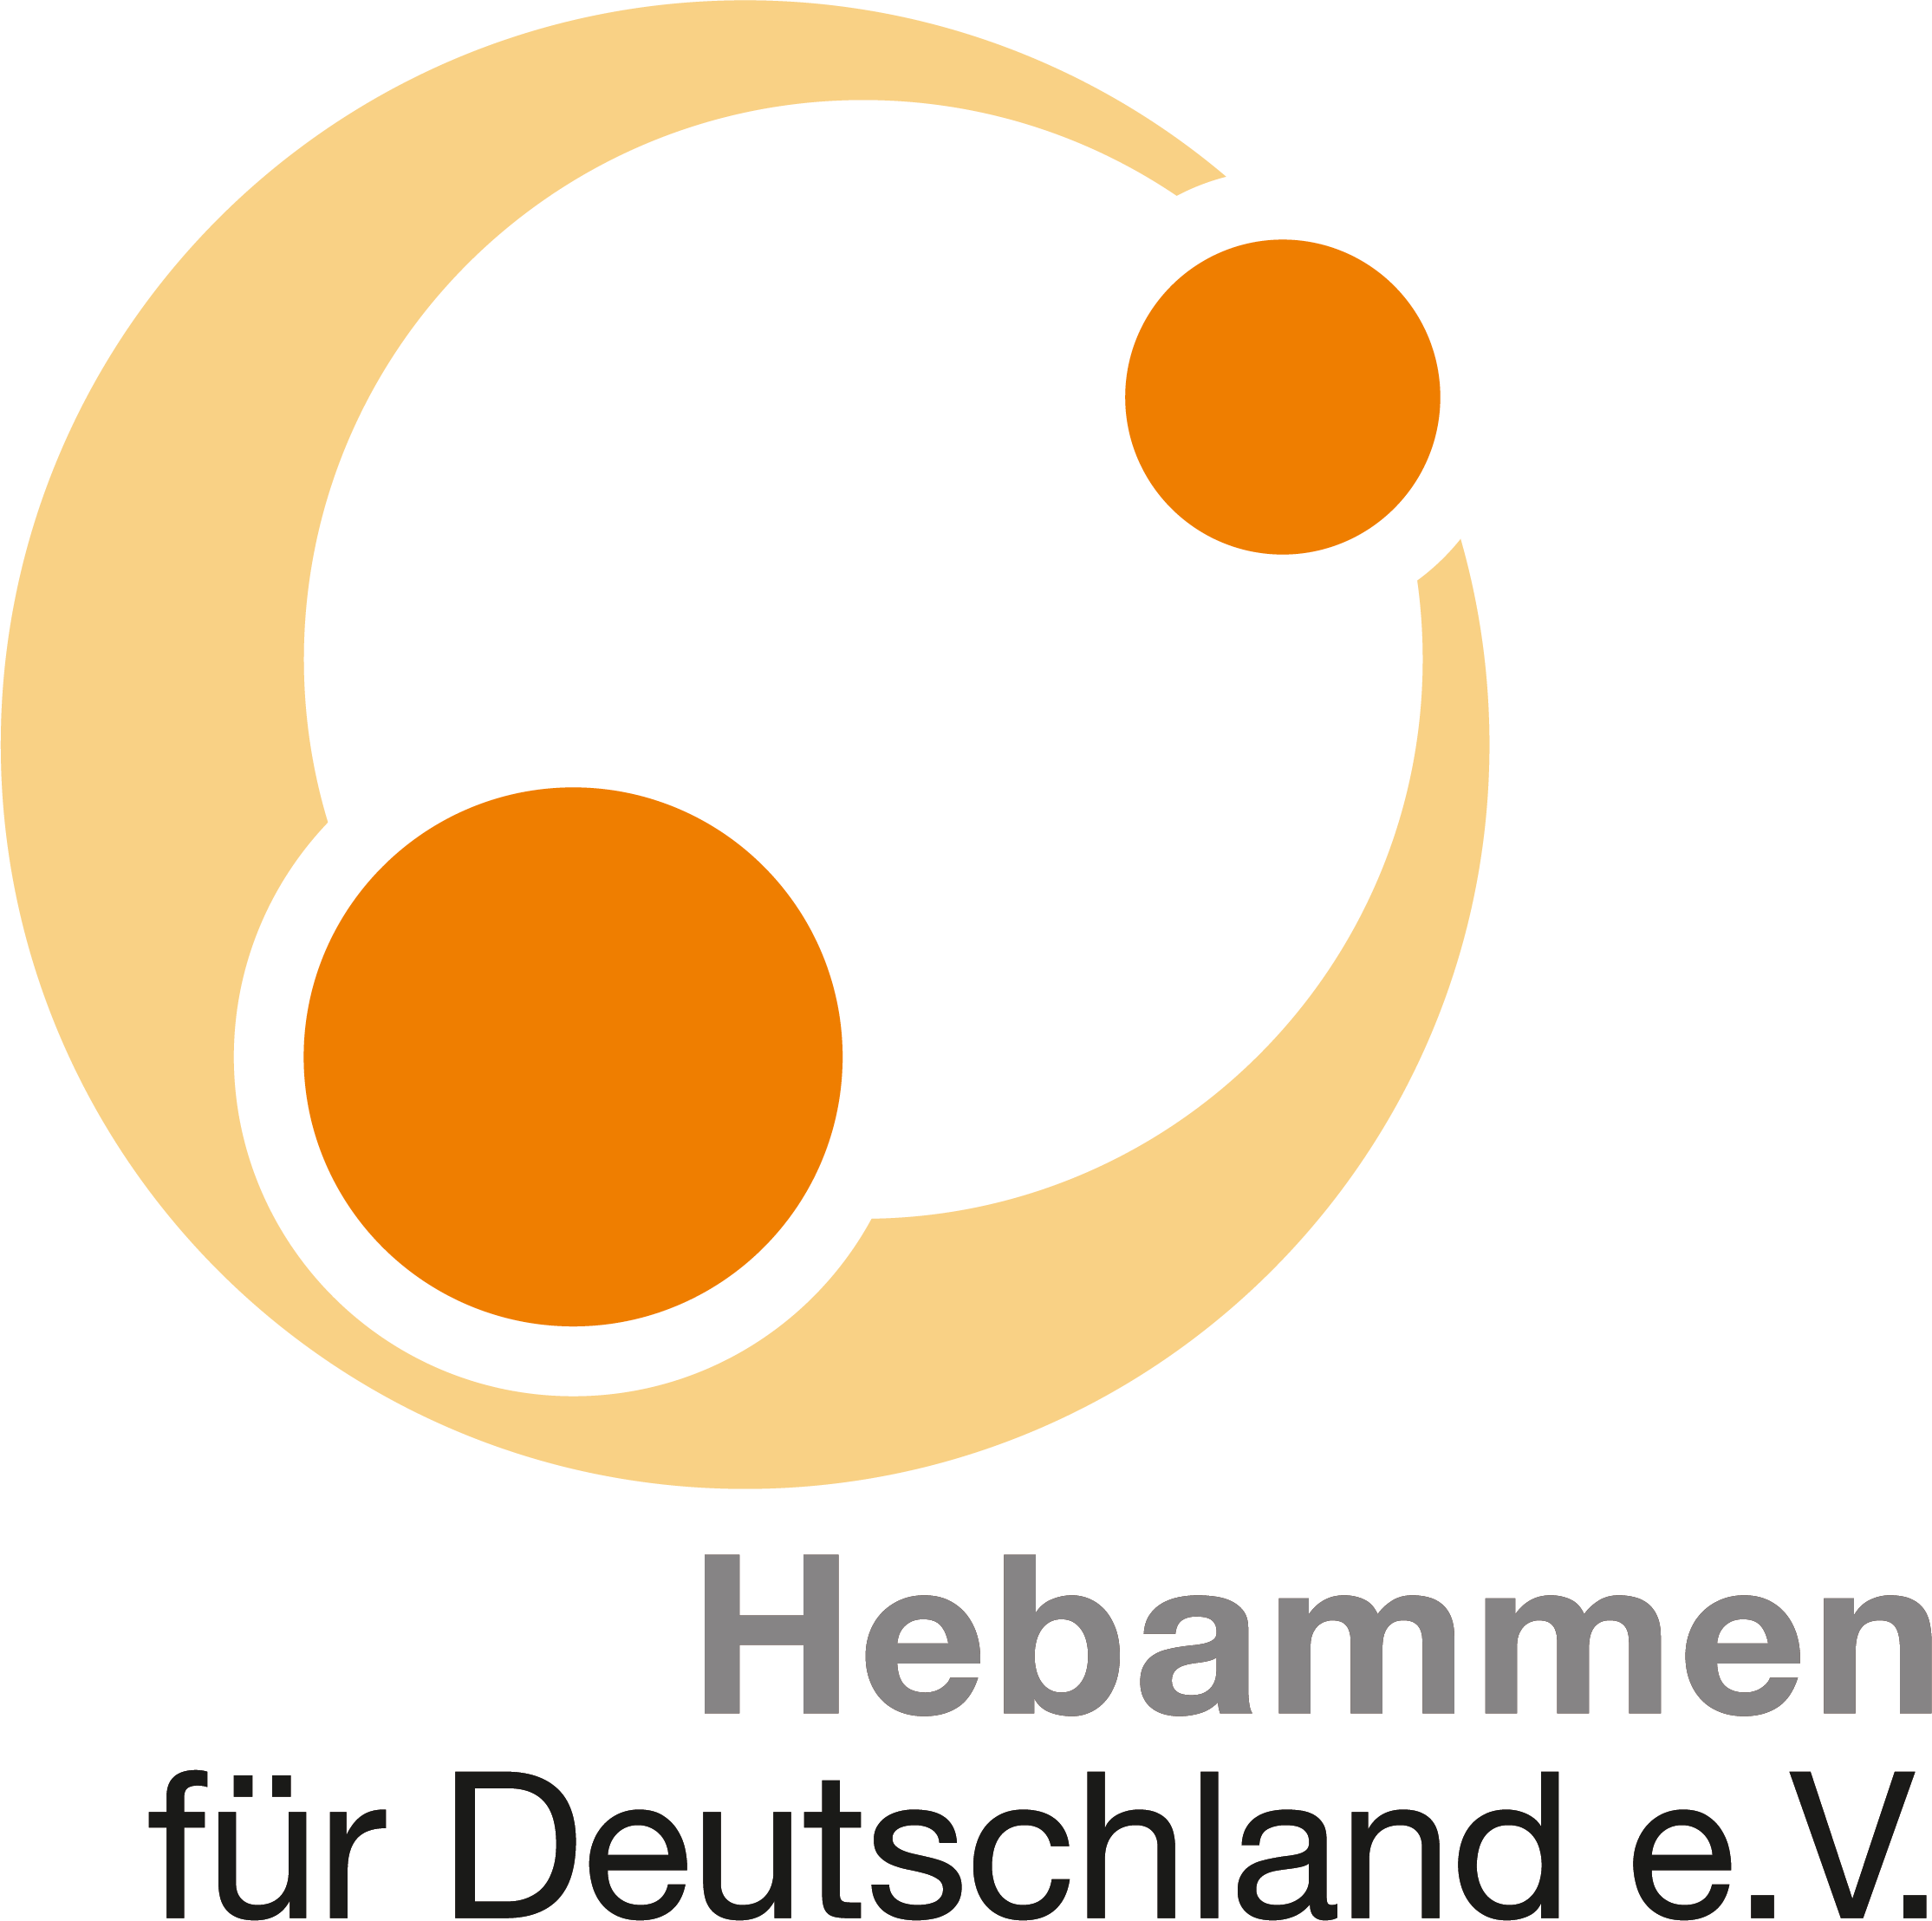 Lisa von Reiche Hebamme Hebammen für Deutschland e.V. Logo